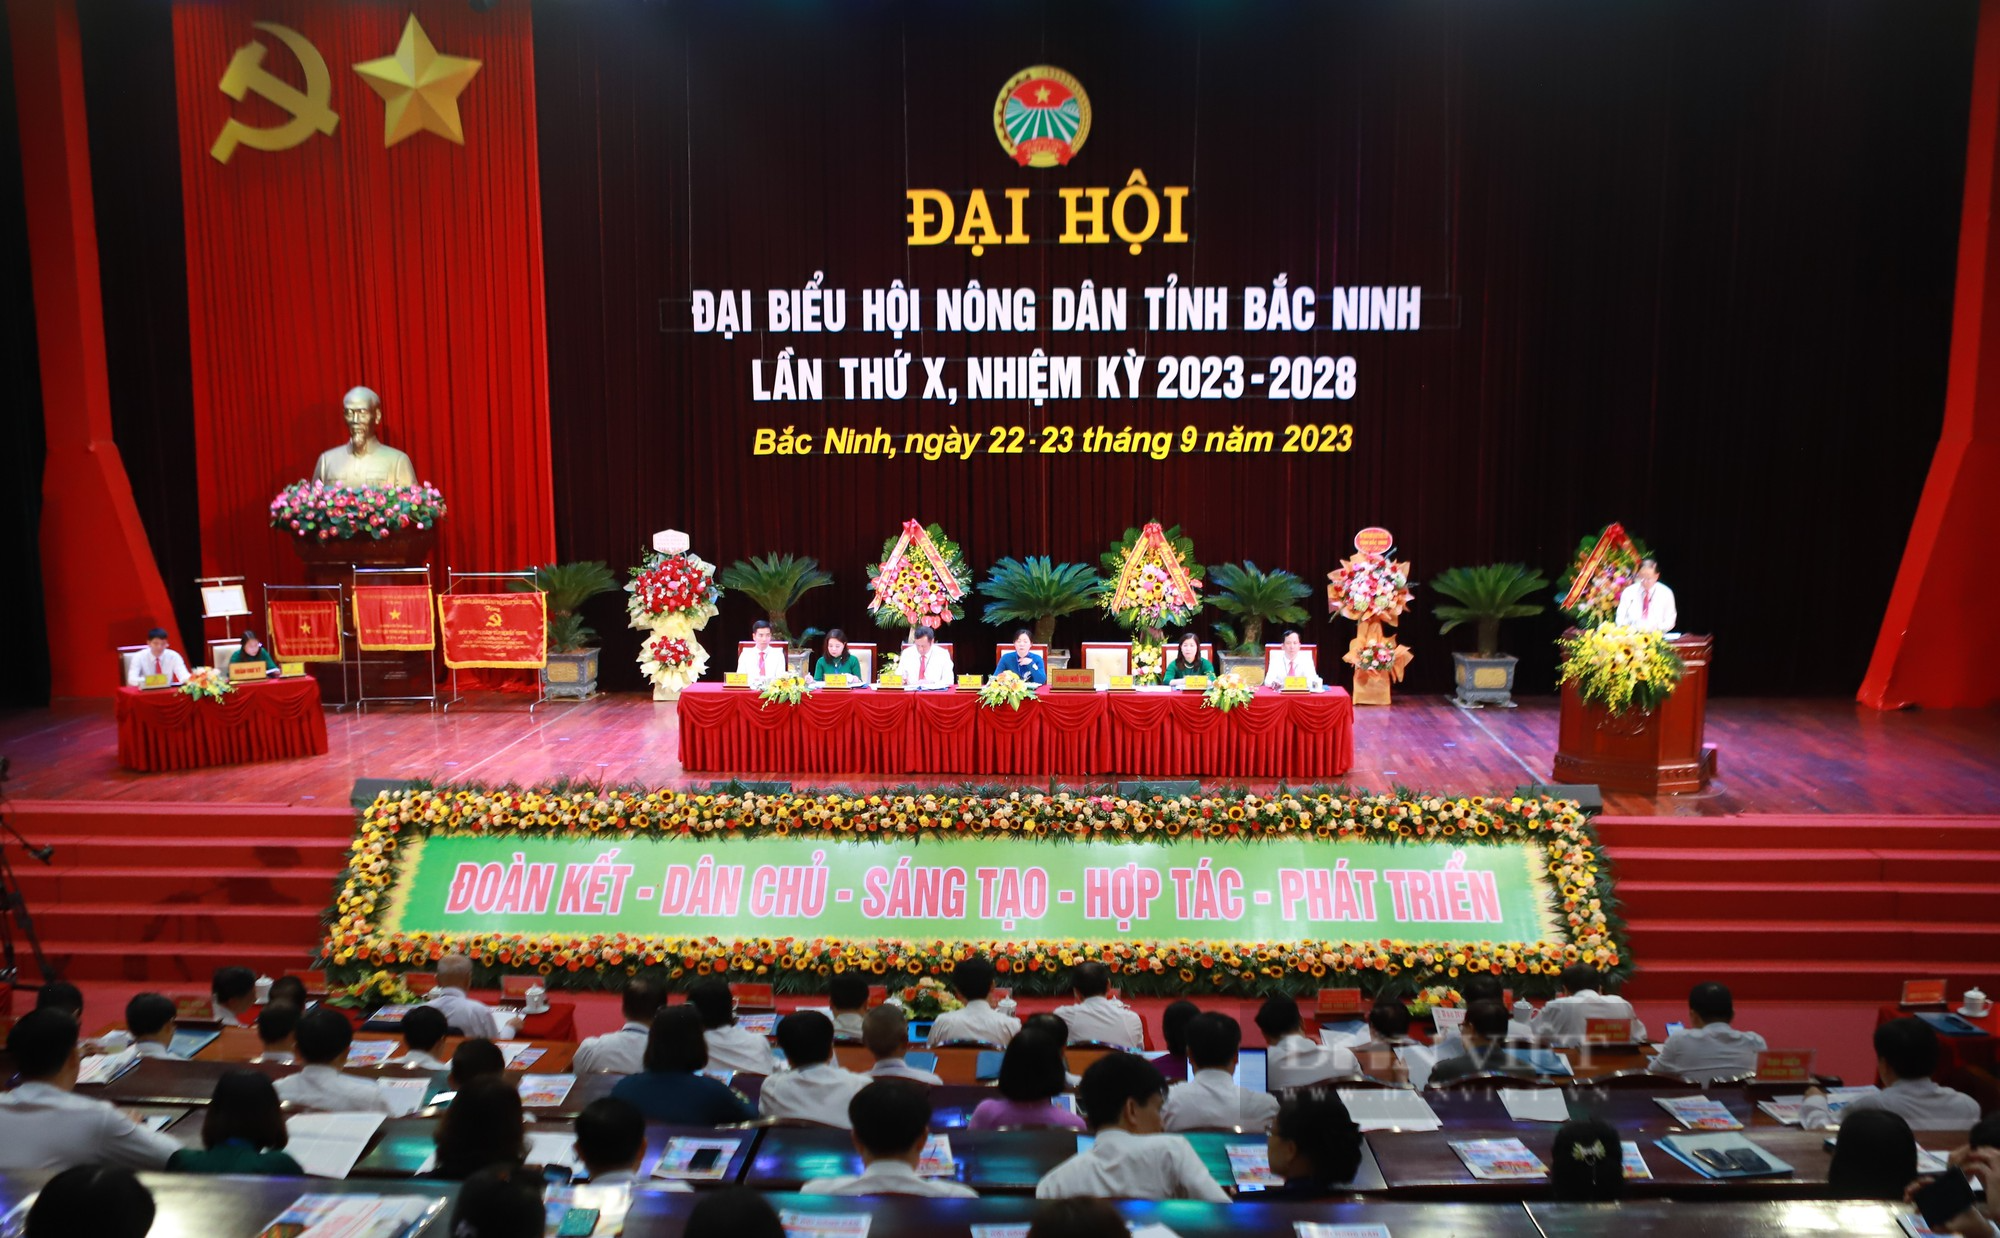 Phó chủ tịch Hội NDVN Nguyễn Xuân Định gợi mở 5 vấn đề tại Đại hội đại biểu Hội Nông dân tỉnh Bắc Ninh - Ảnh 1.